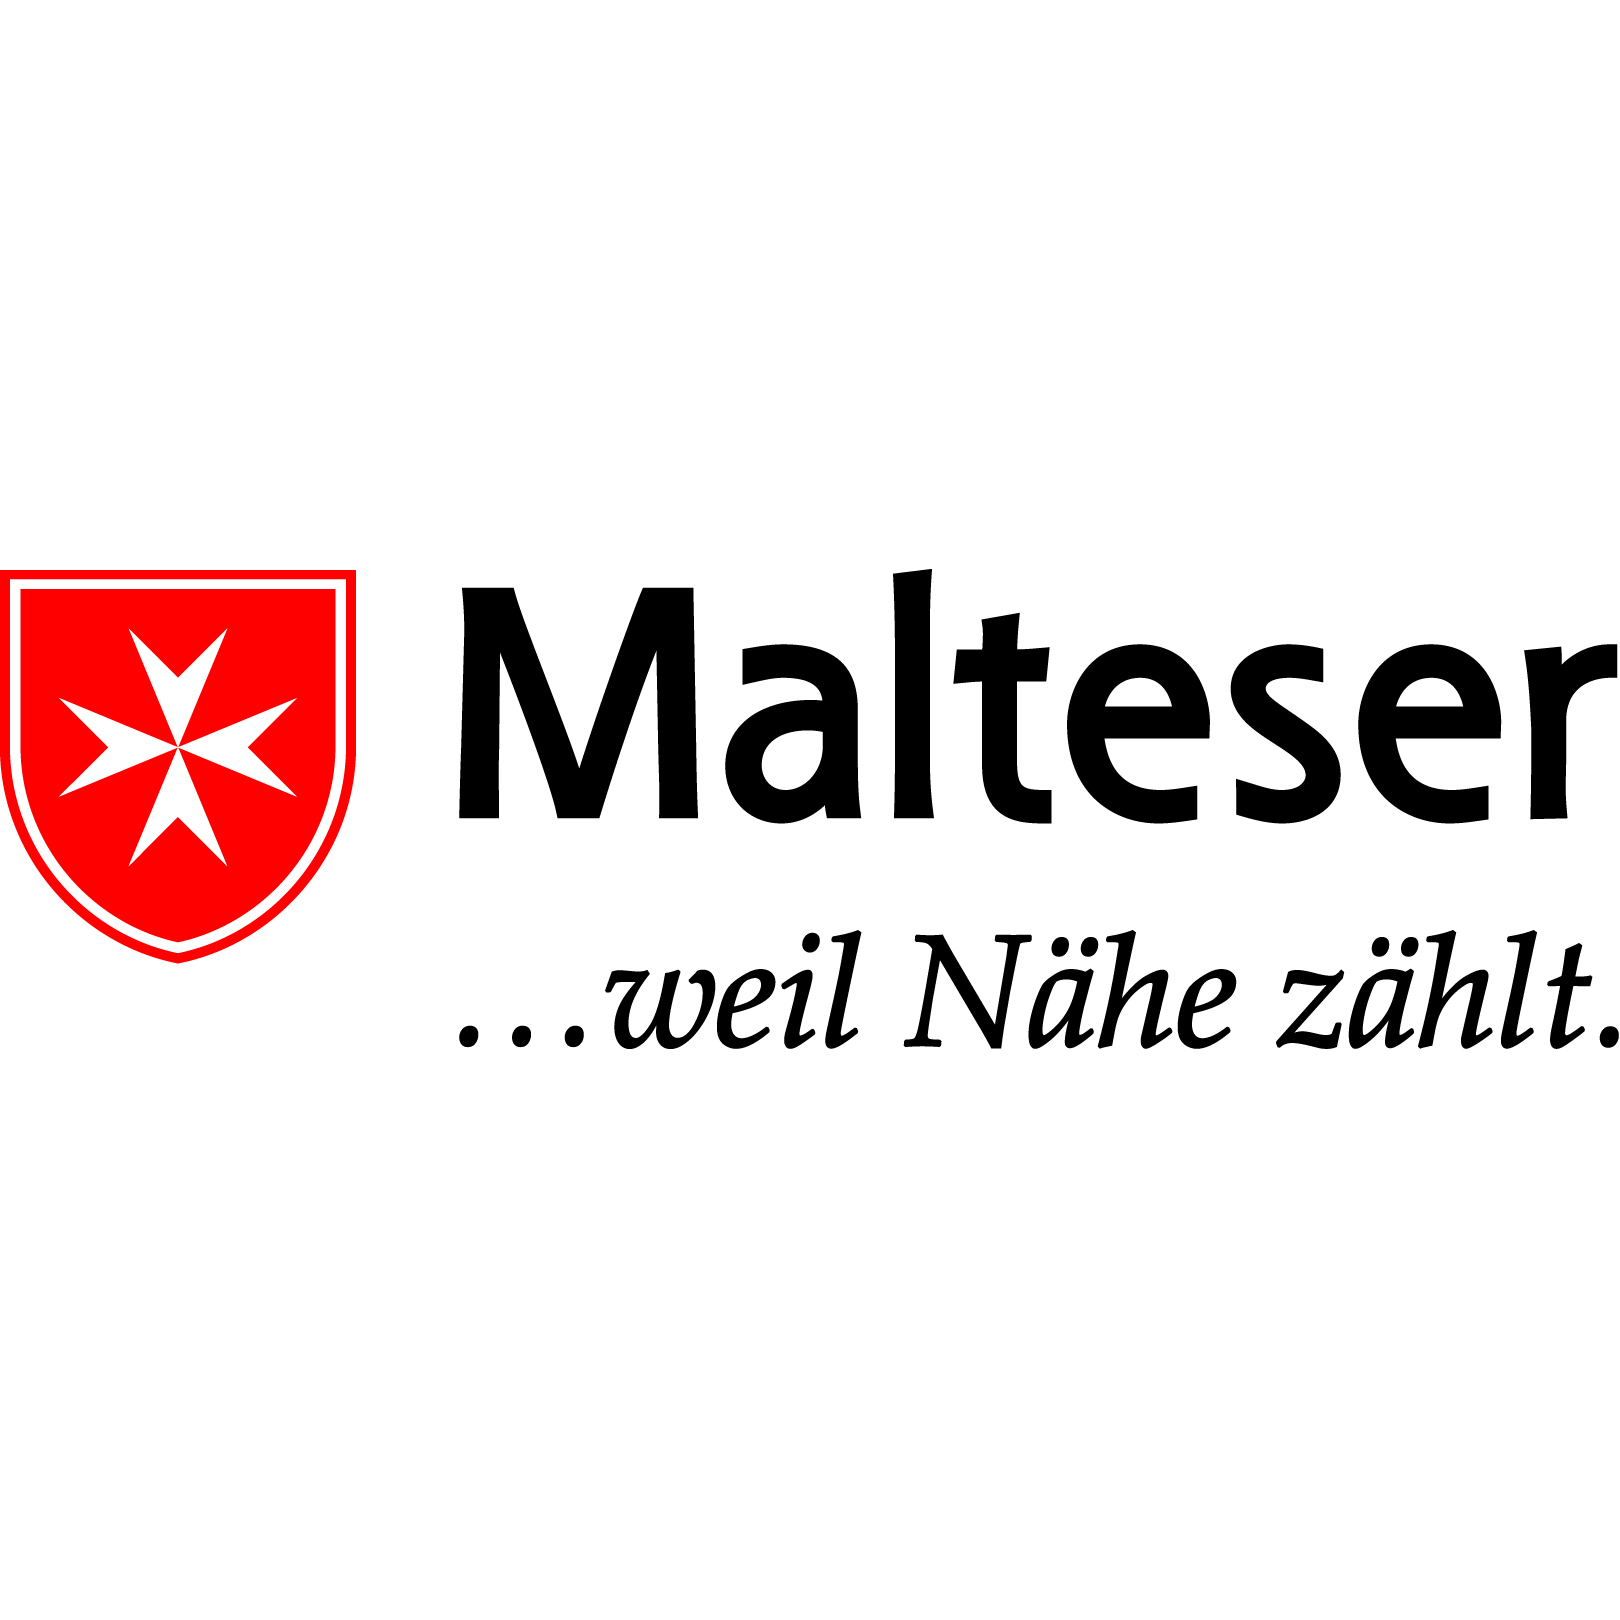 Malteser (c) Malteser